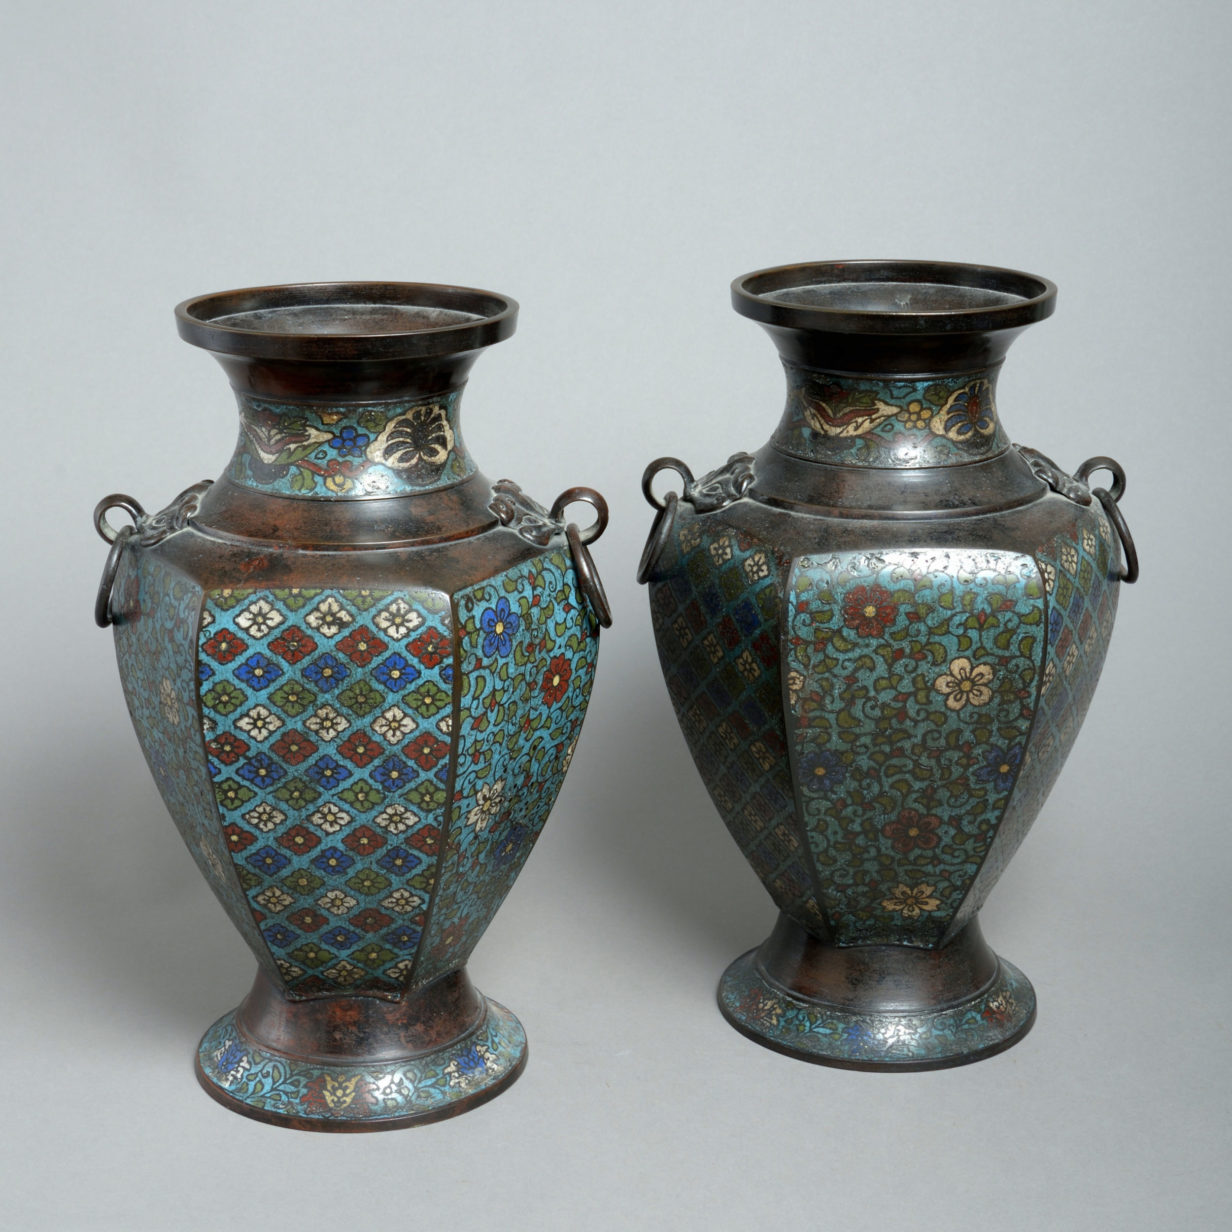 A 19th century pair of cloisonné vases